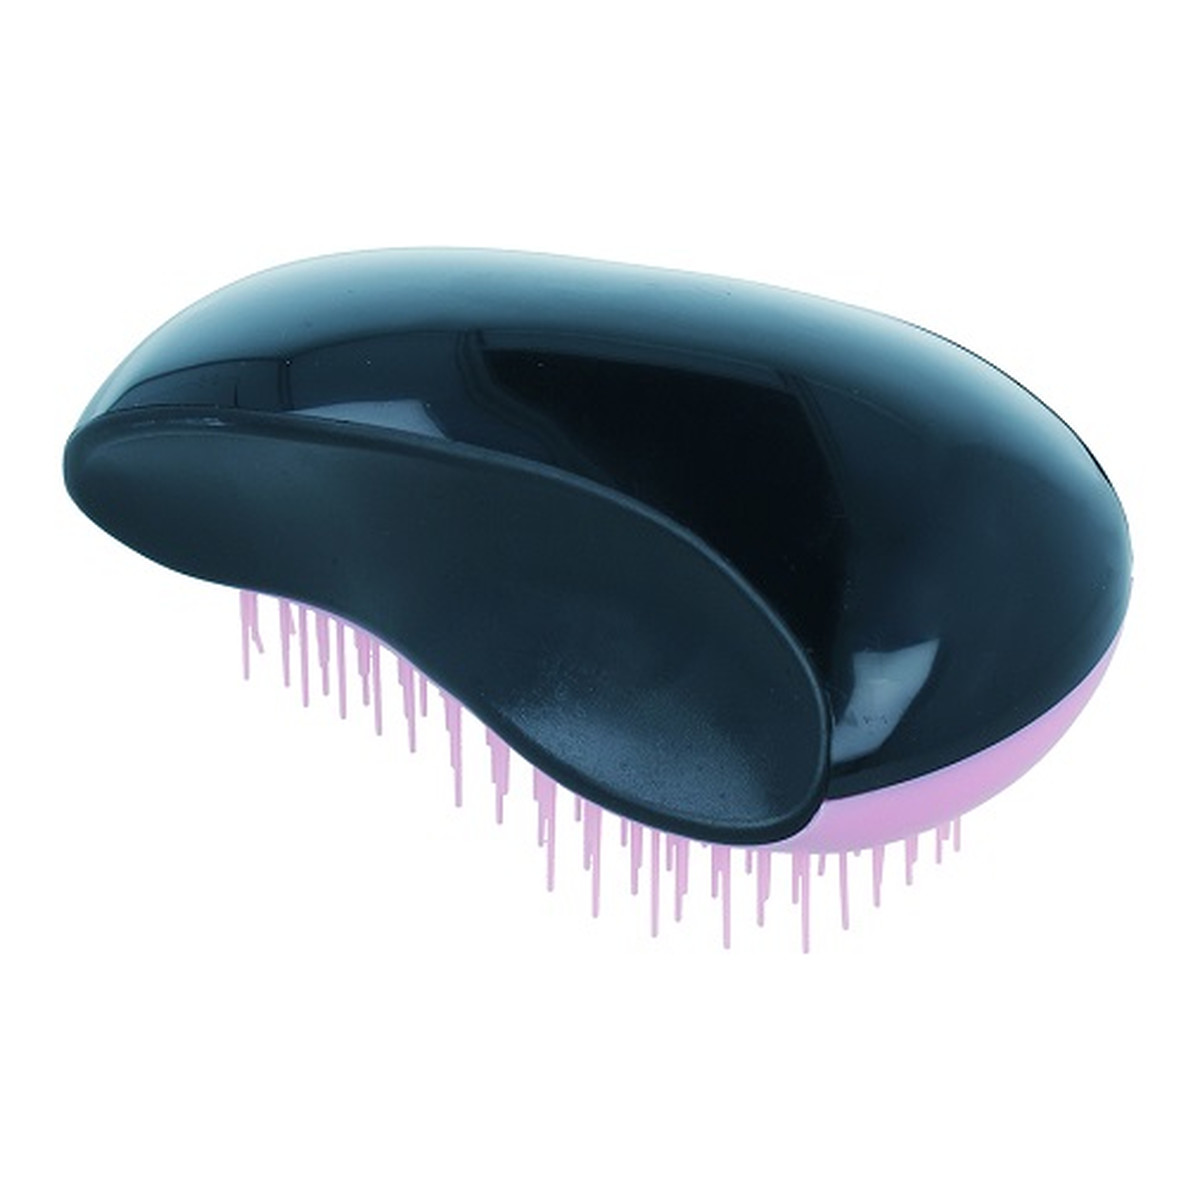 Twish Spiky Model 1 szczotka do włosów Black & Light Pink